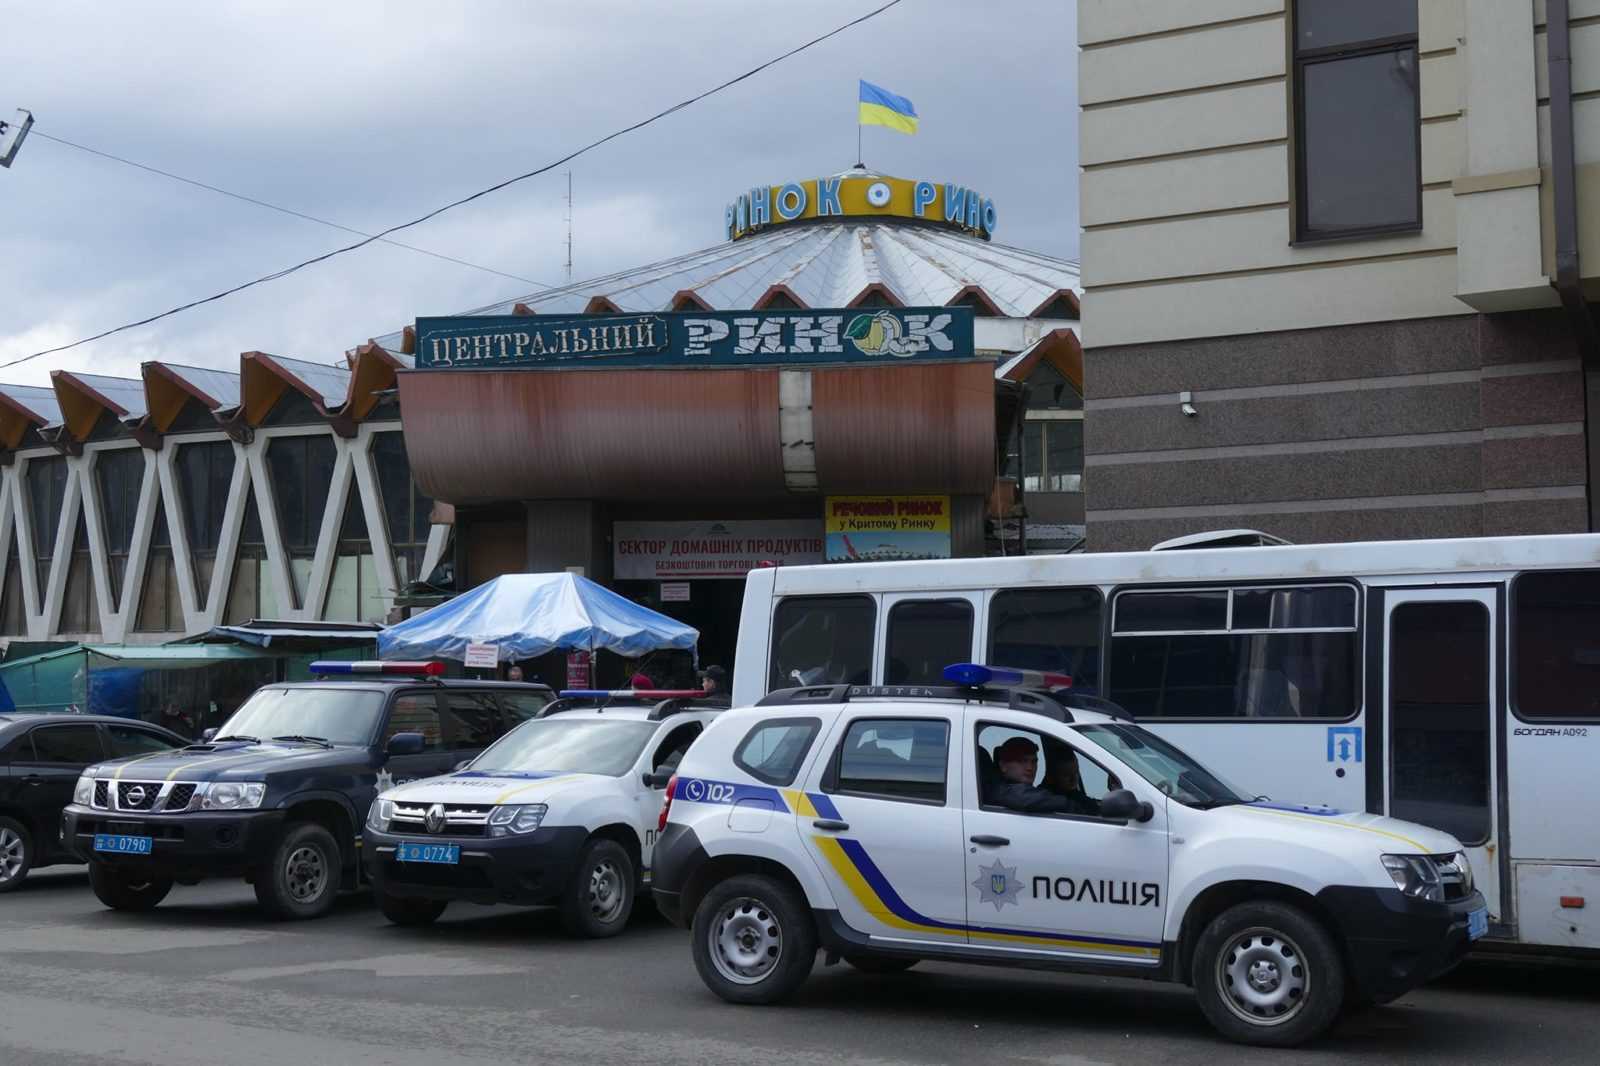 Власники «Торгового сервісу» подали в суд на Івано-Франківську міськраду